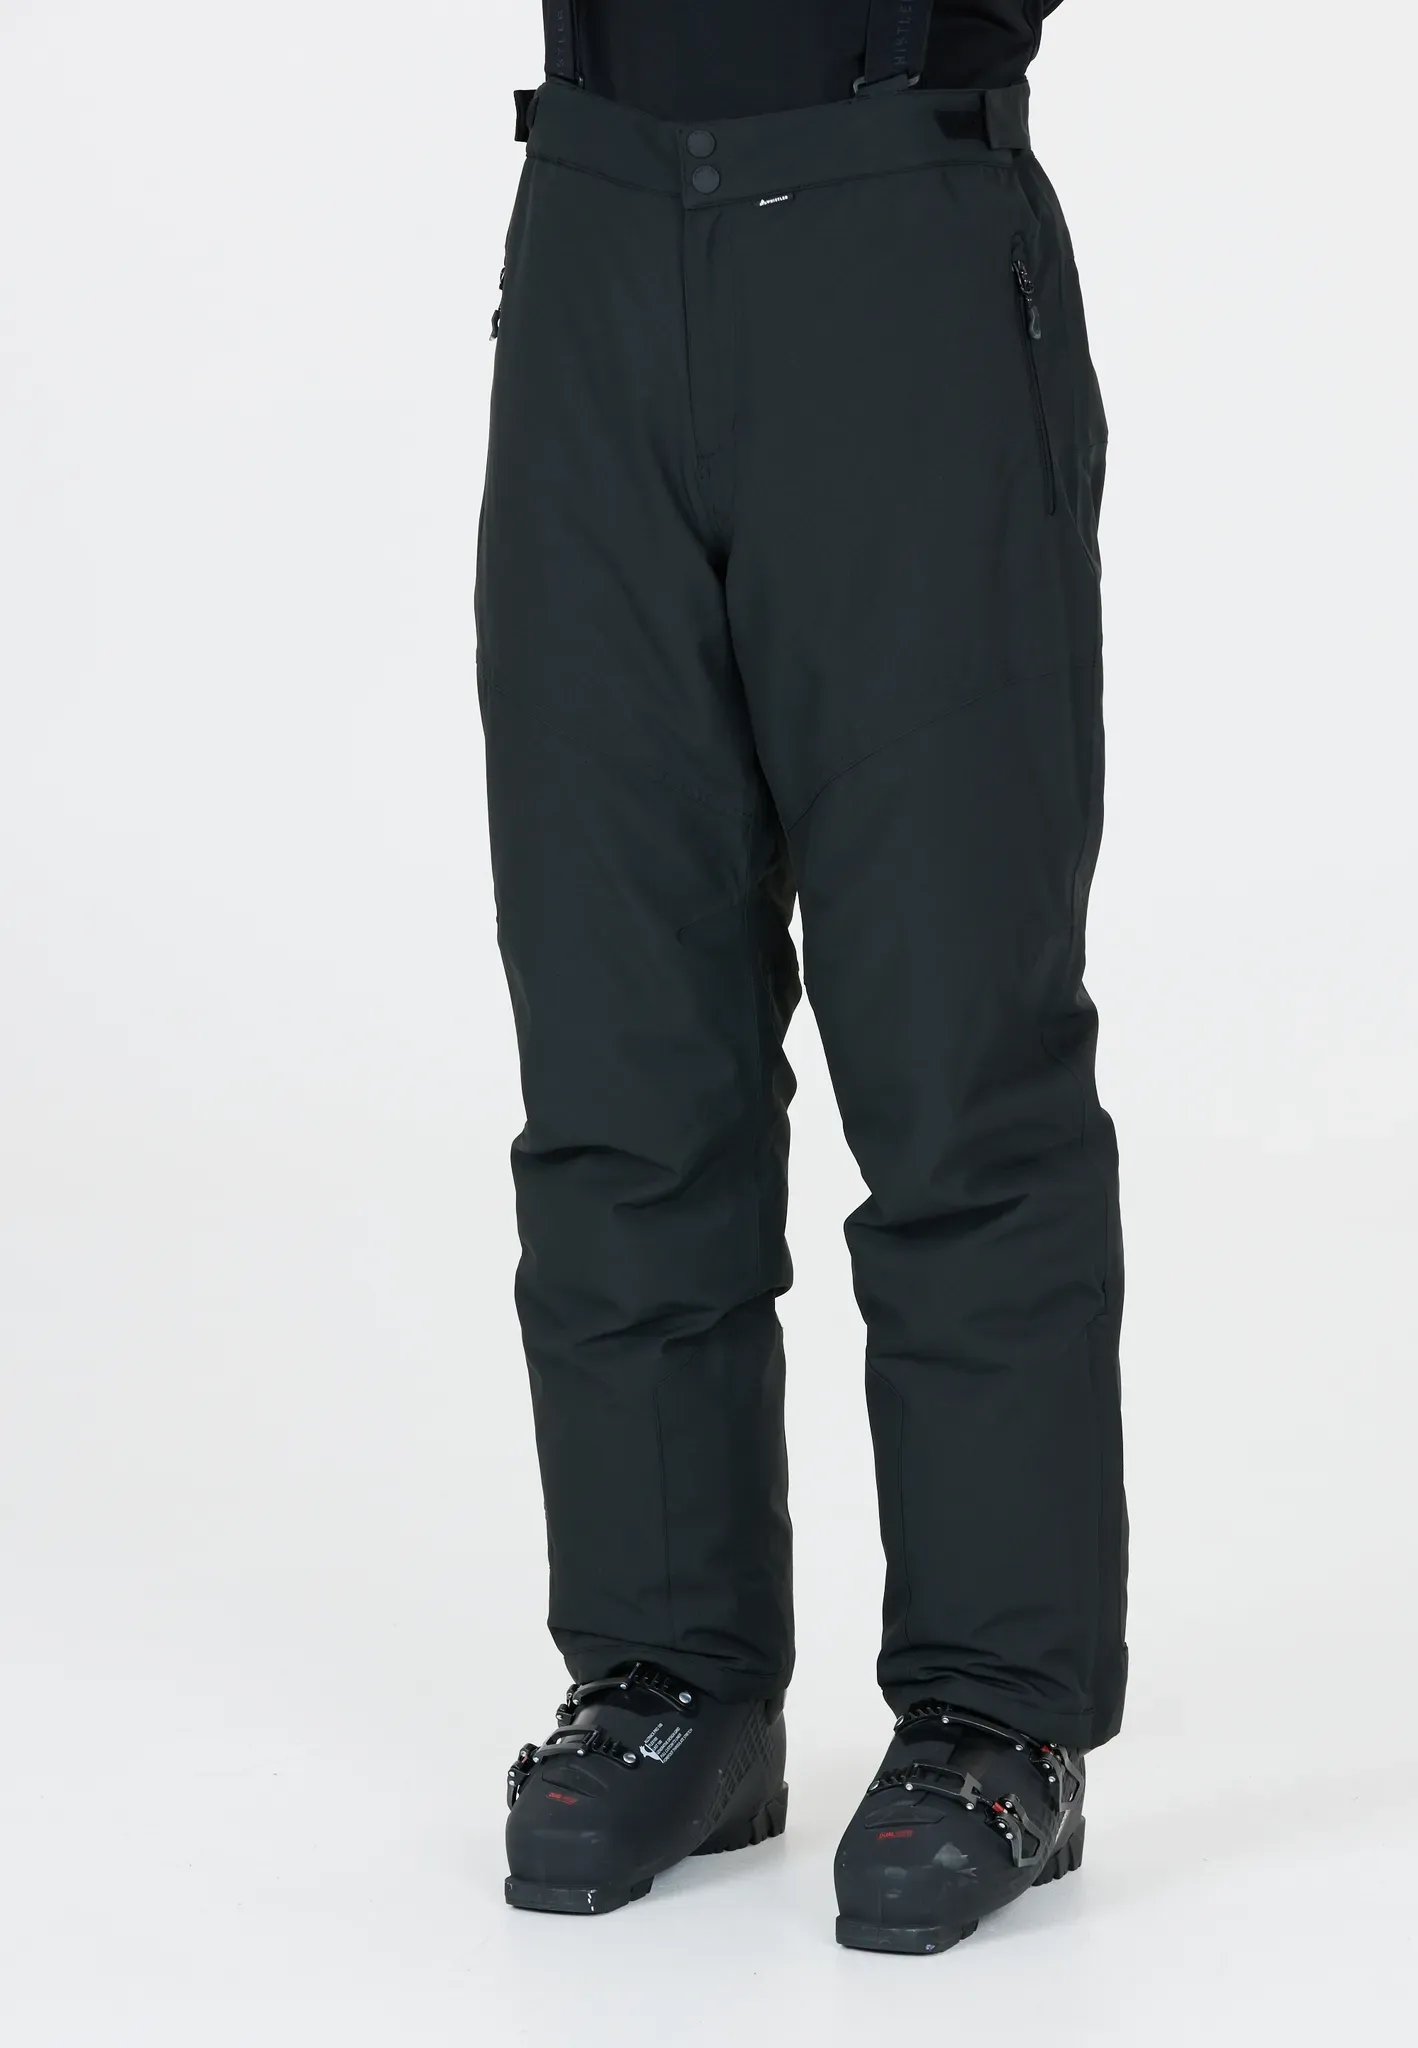 Skihose WHISTLER "Drizzle" Gr. XXL, US-Größen, schwarz Herren Hosen Skihosen mit wasserabweisenden Eigenschaften und funktionalen Features